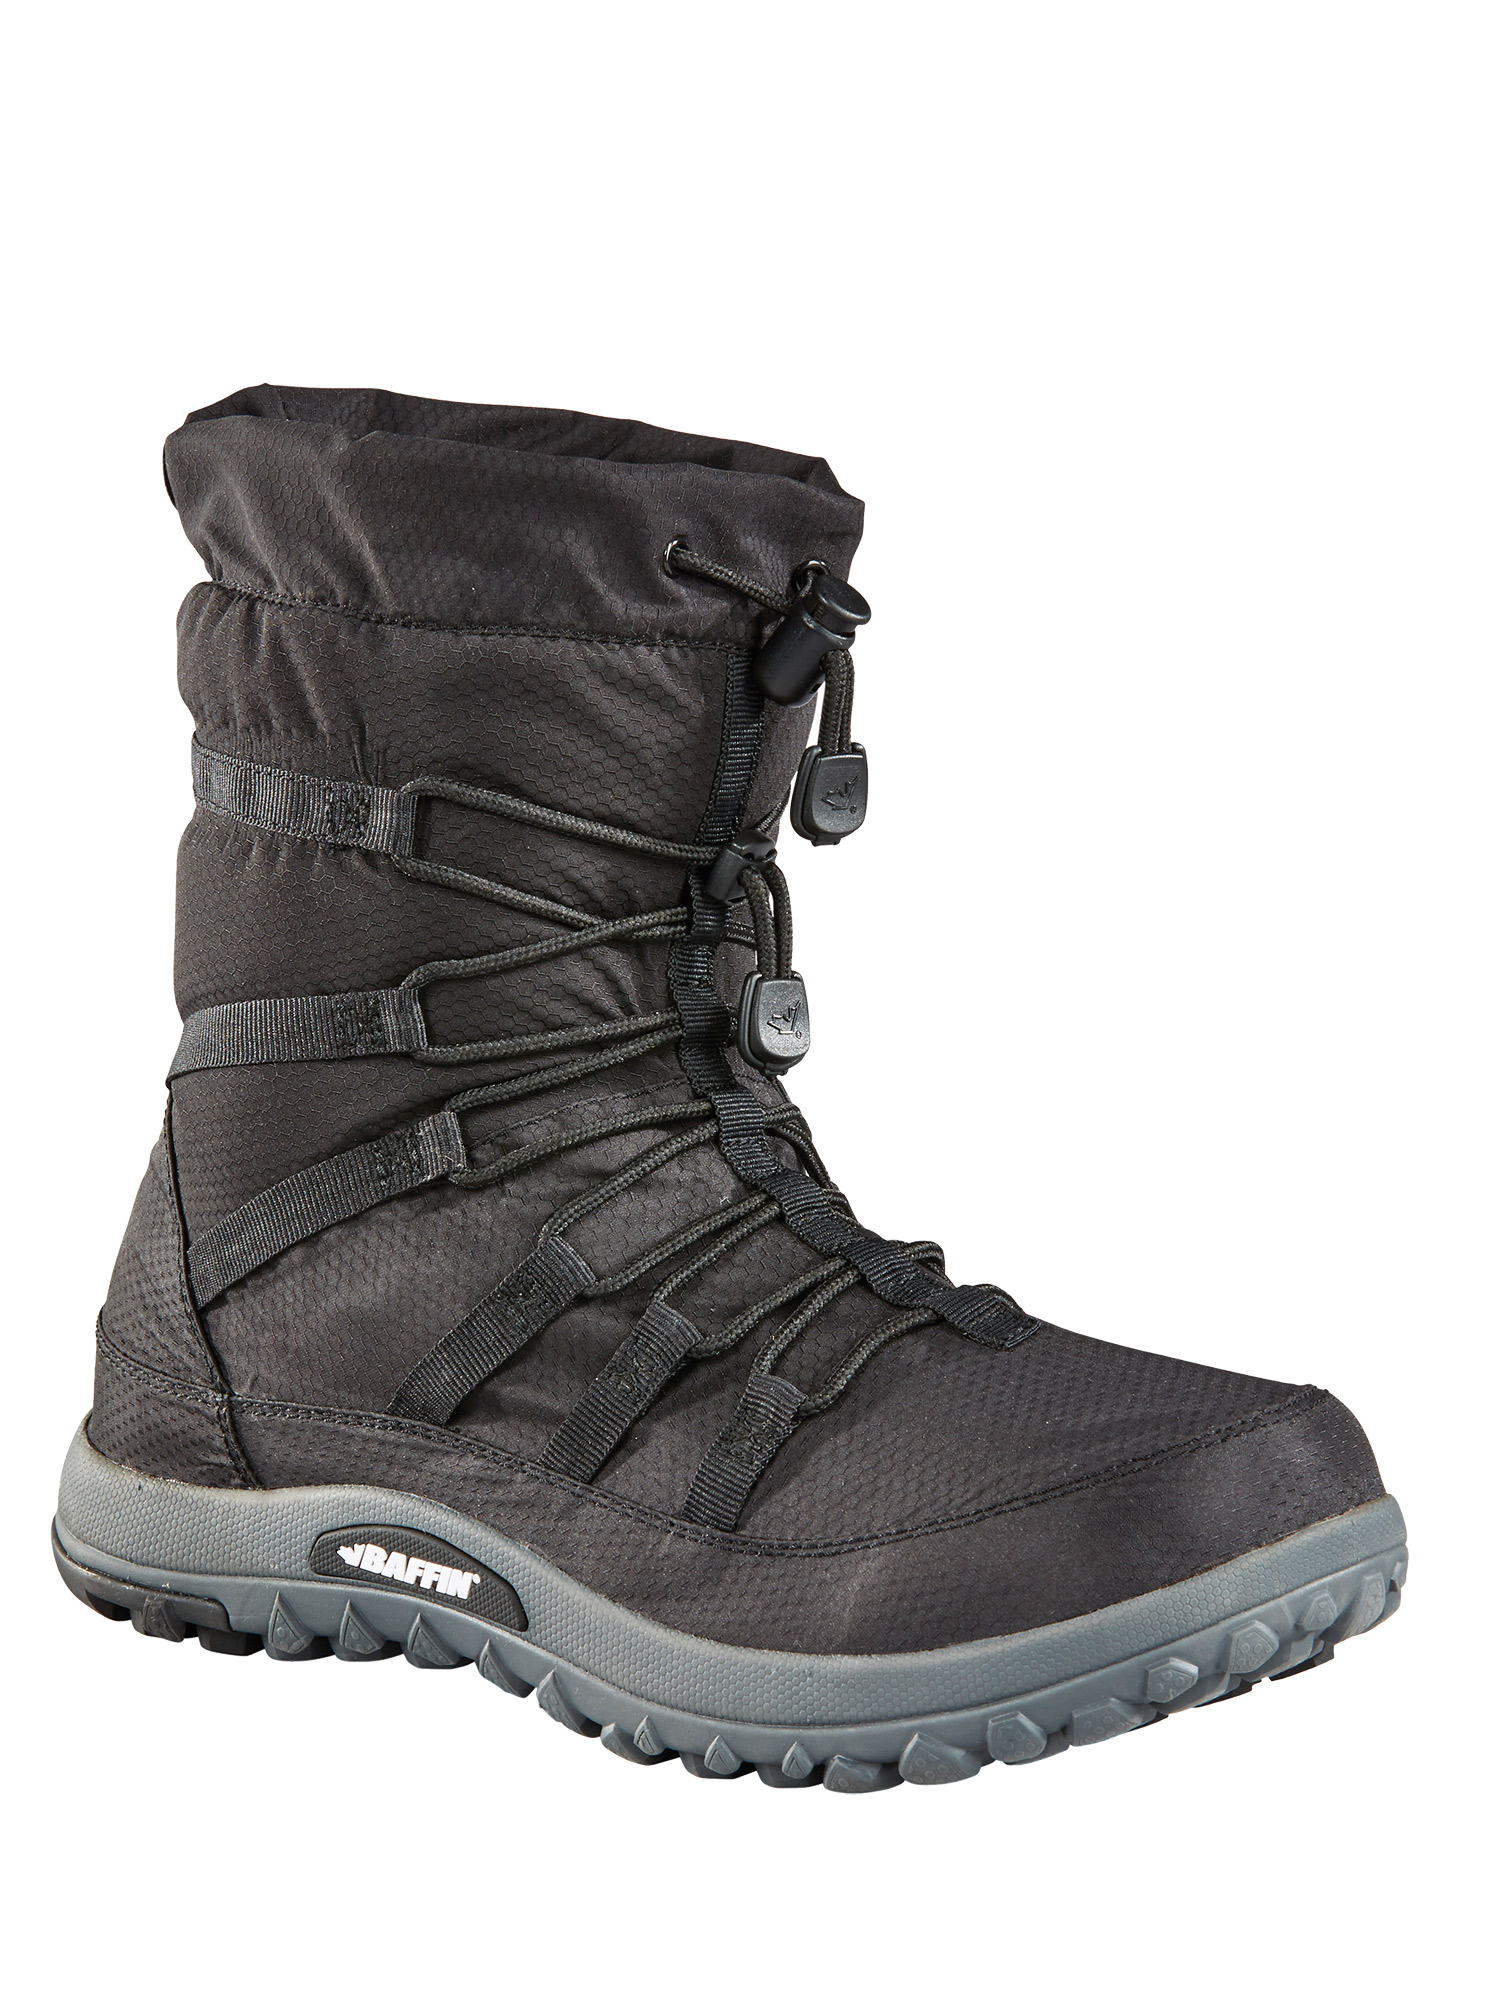 Baffin Escalate Lightweight Winter Boot - EASEM003